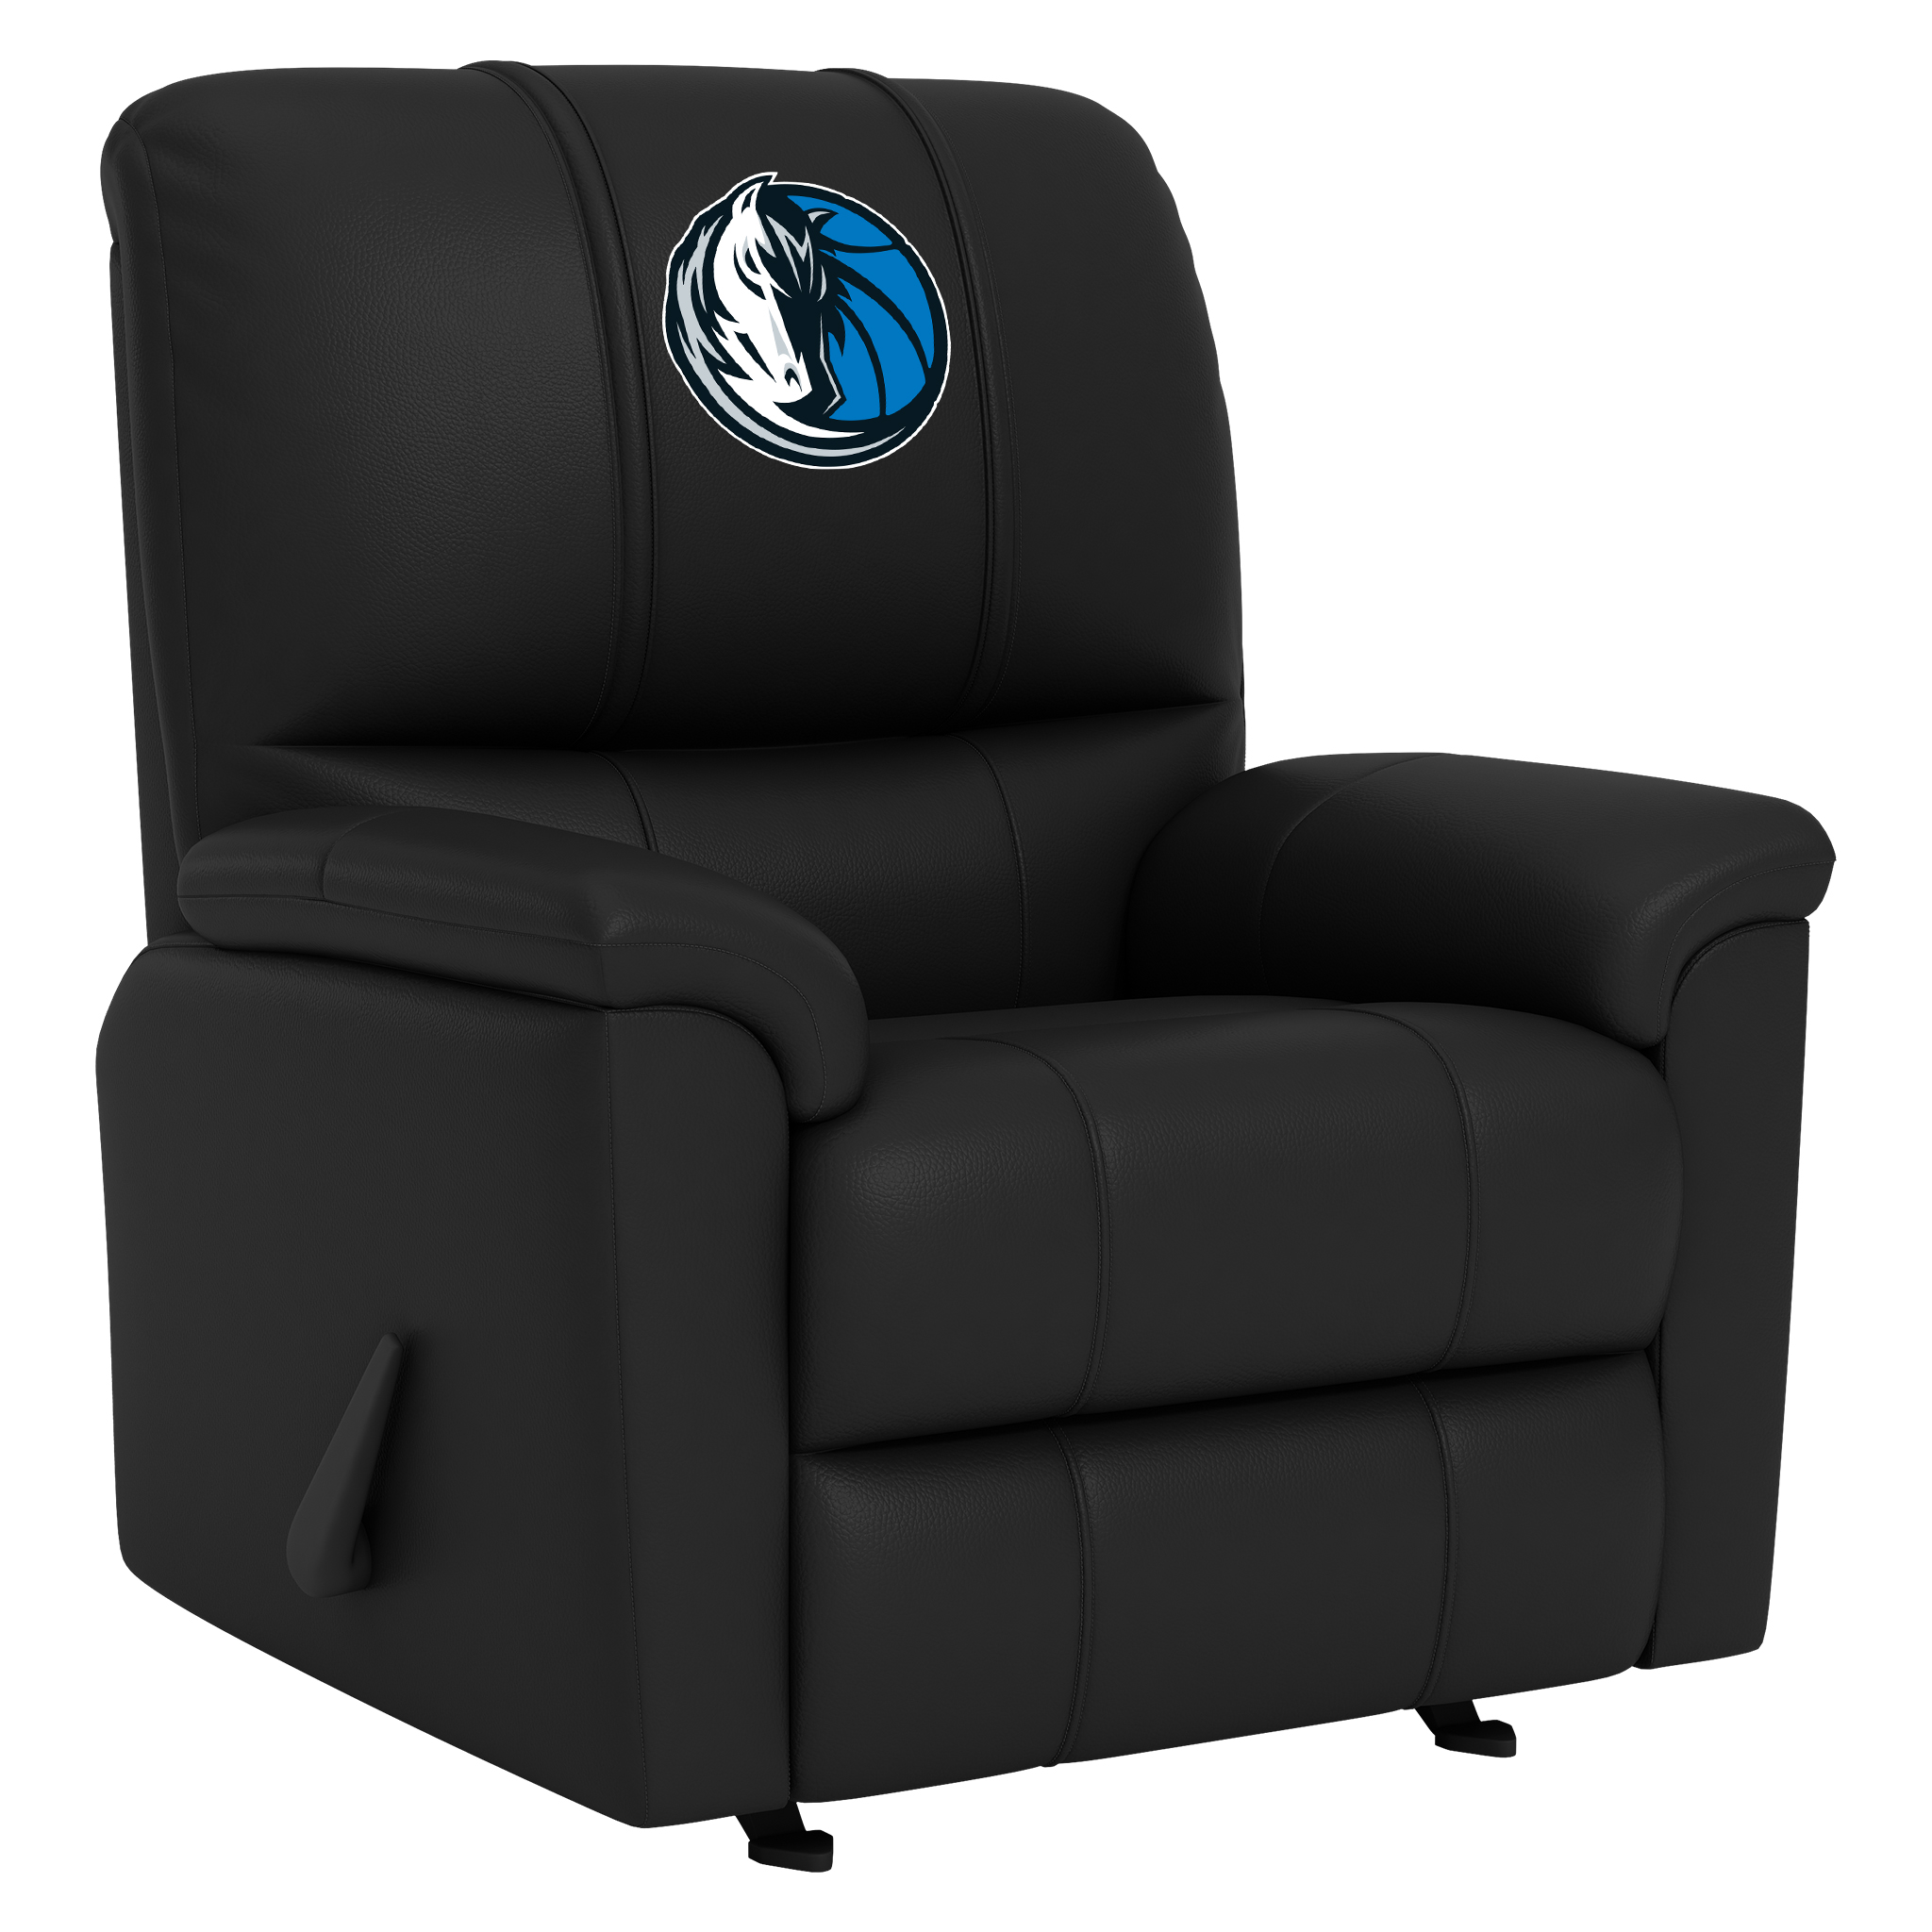 Atlanta Hawks Silver Club Chair with Atlanta Hawks Logo